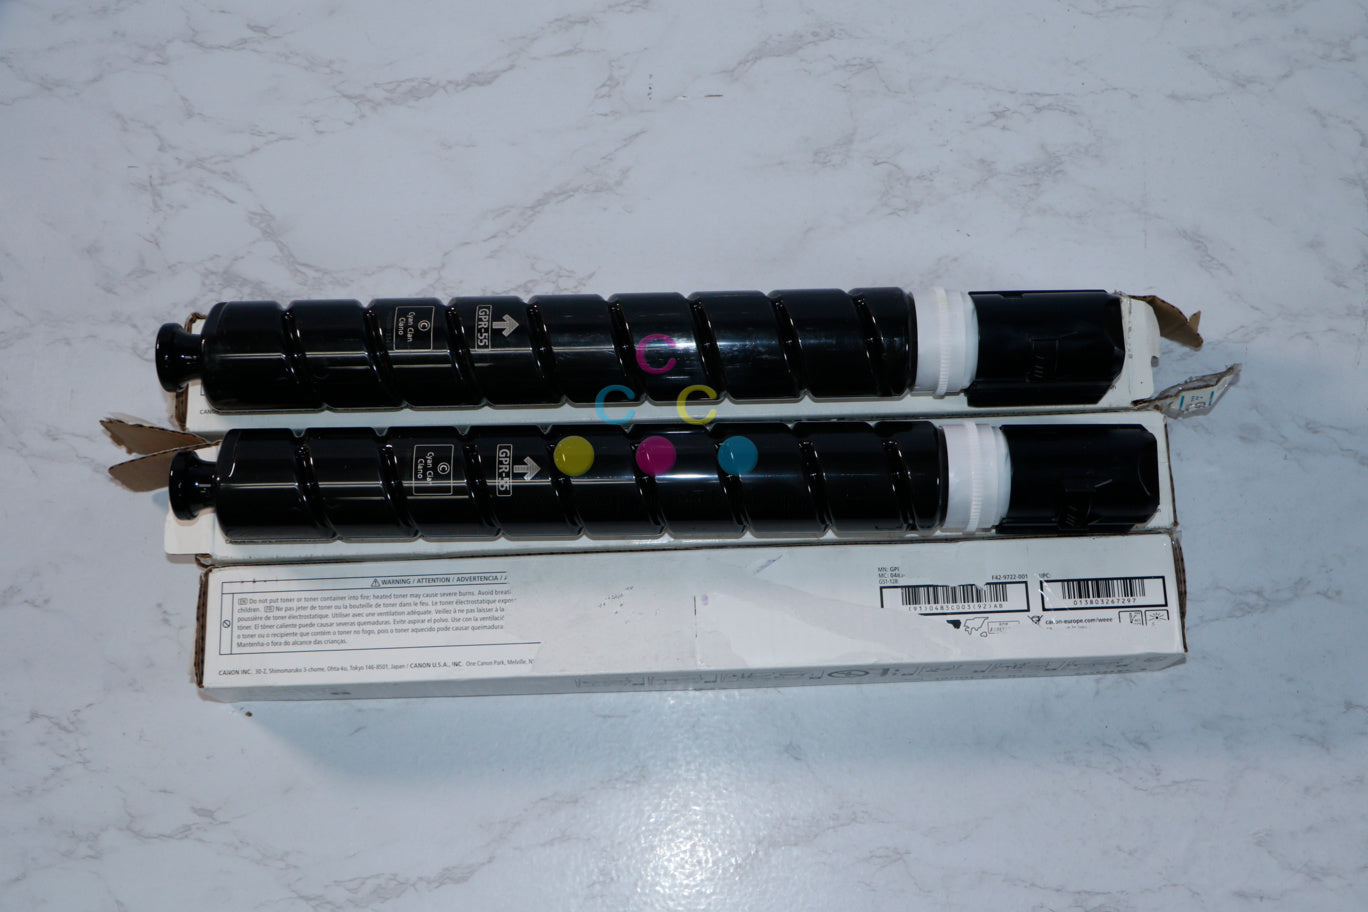 3 Cosmetic OEM Canon iR-ADV C5535,C5540,C5550,C5560 GPR-55 CCM Toner Cartridges